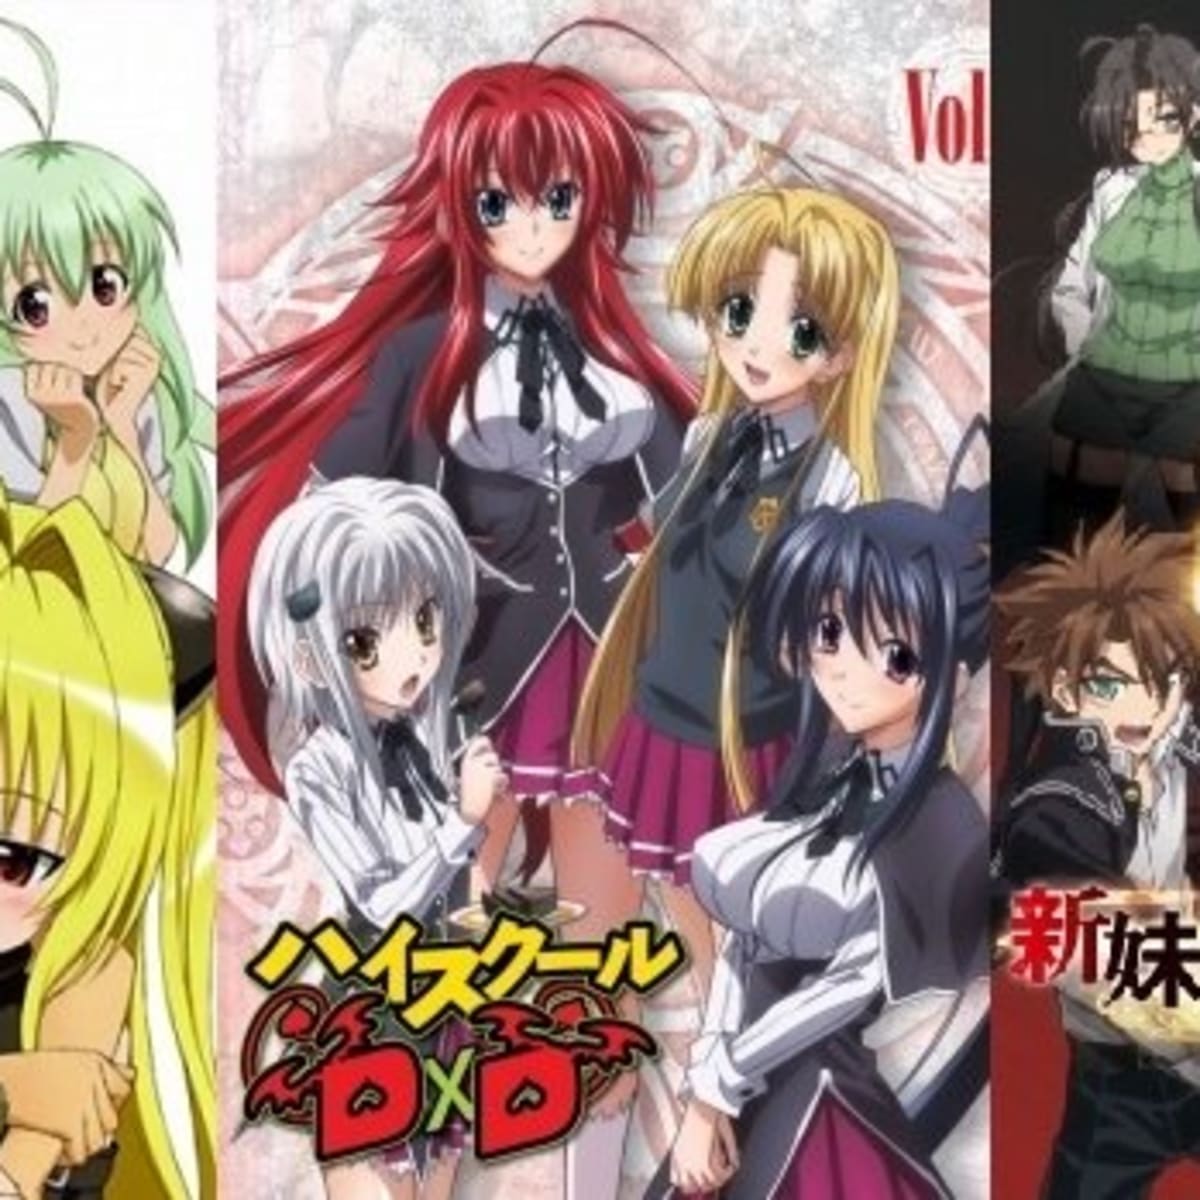 Ecchi Anime Sex - Top 10 Ecchi Anime Series - ReelRundown